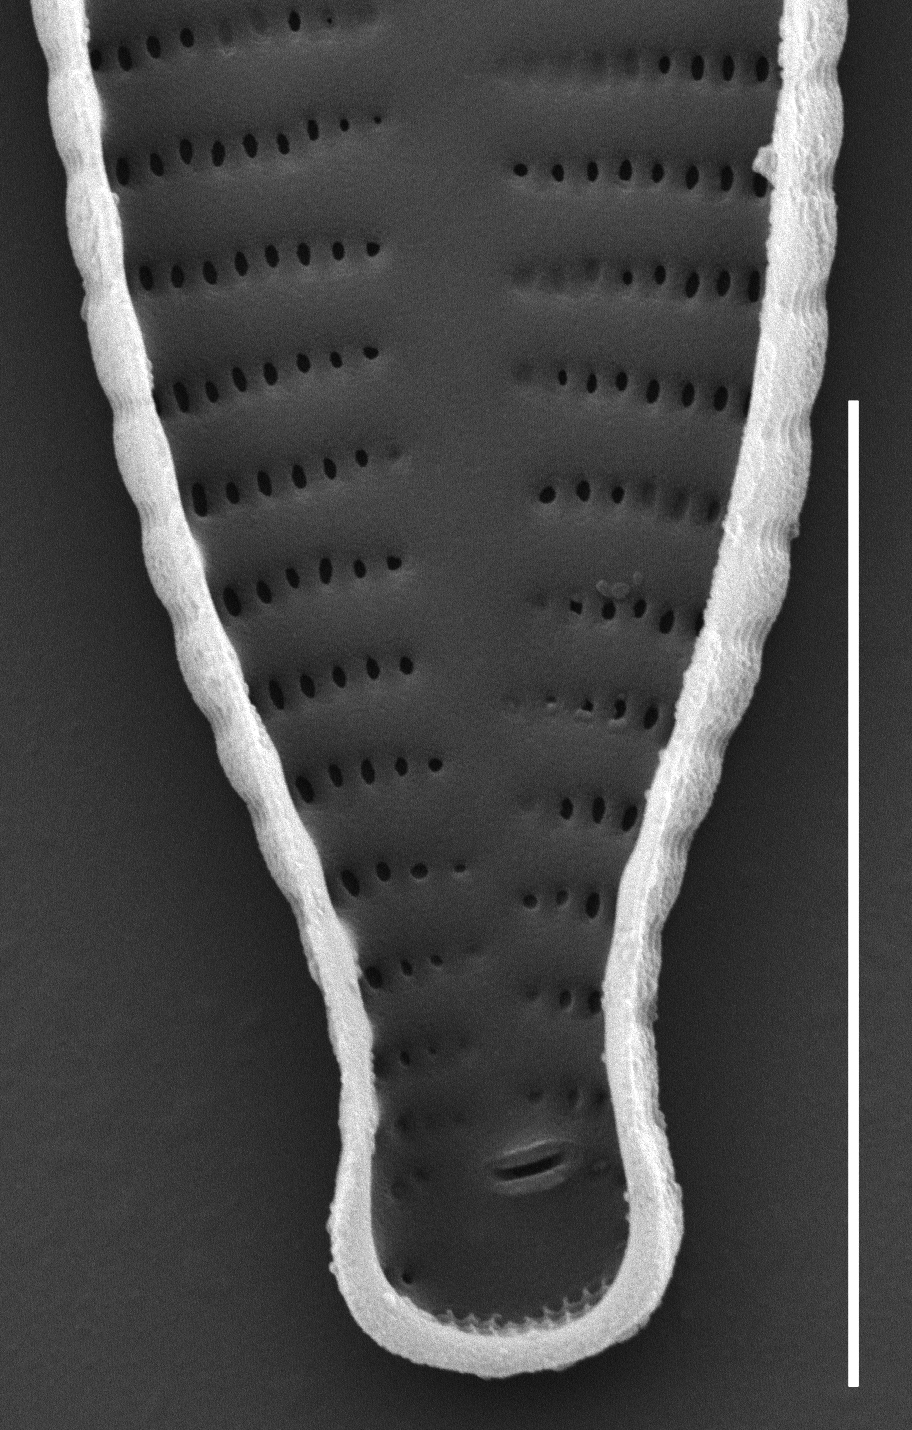 Fragilaria recapitellata SEM4